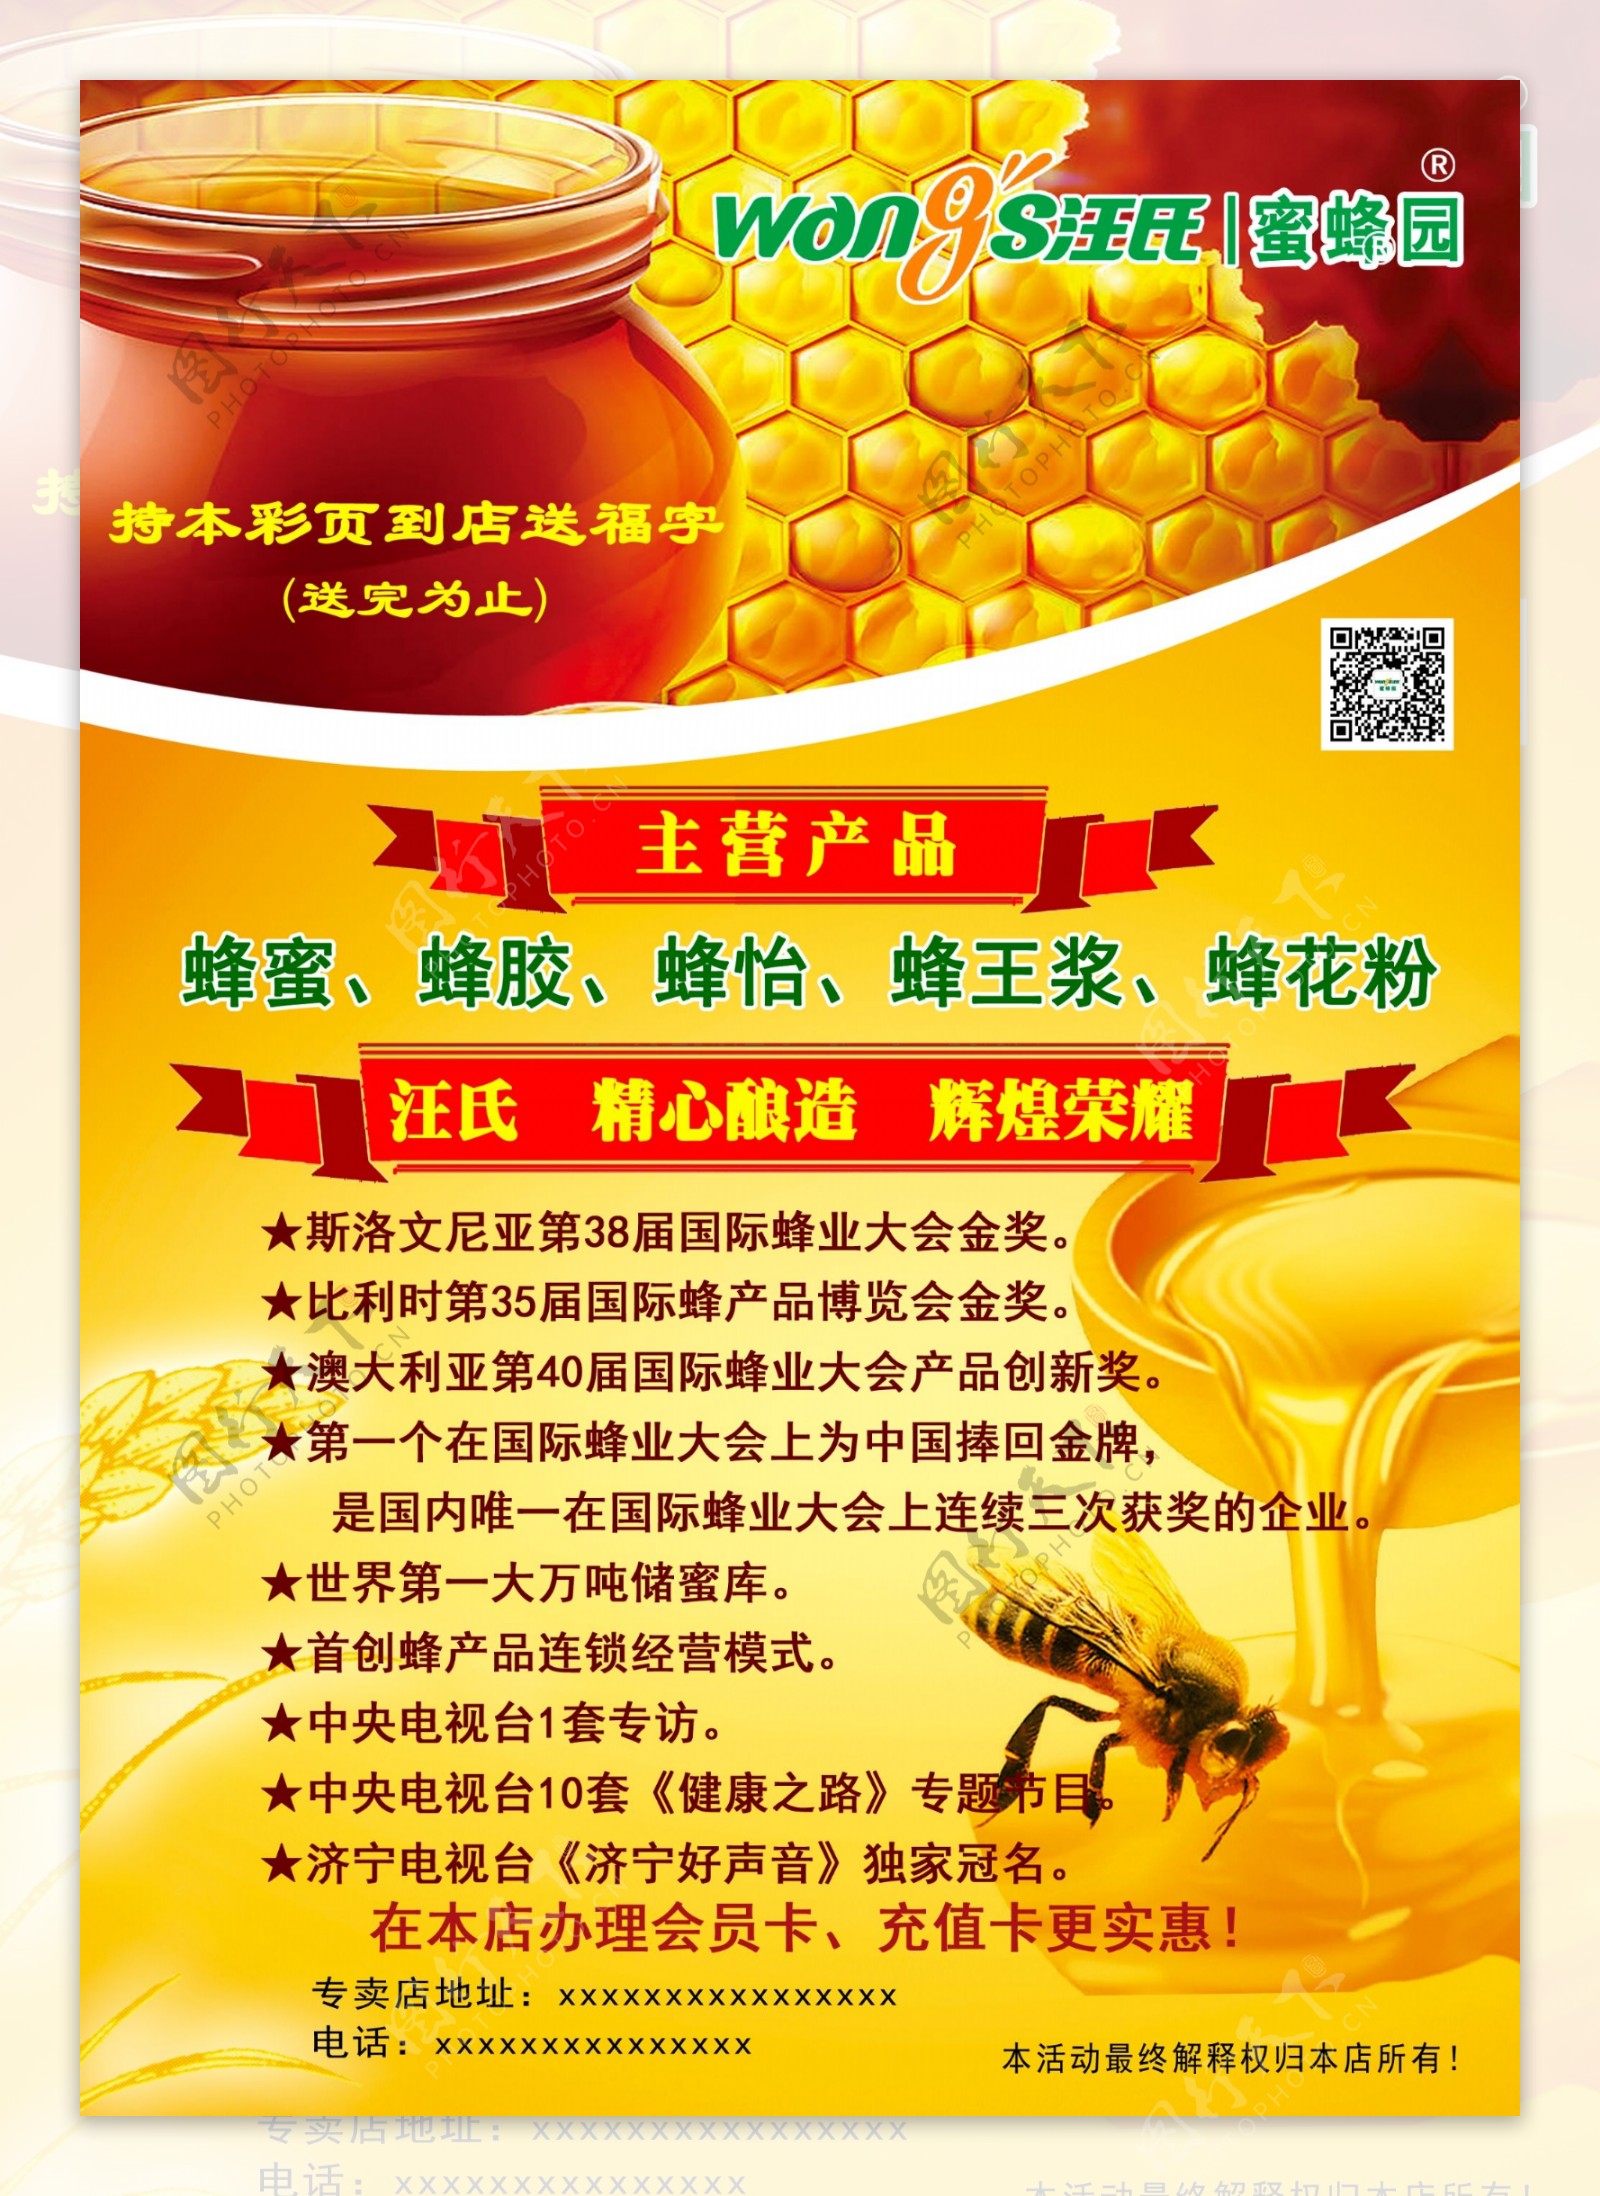 汪氏蜜蜂园广告宣传单图片